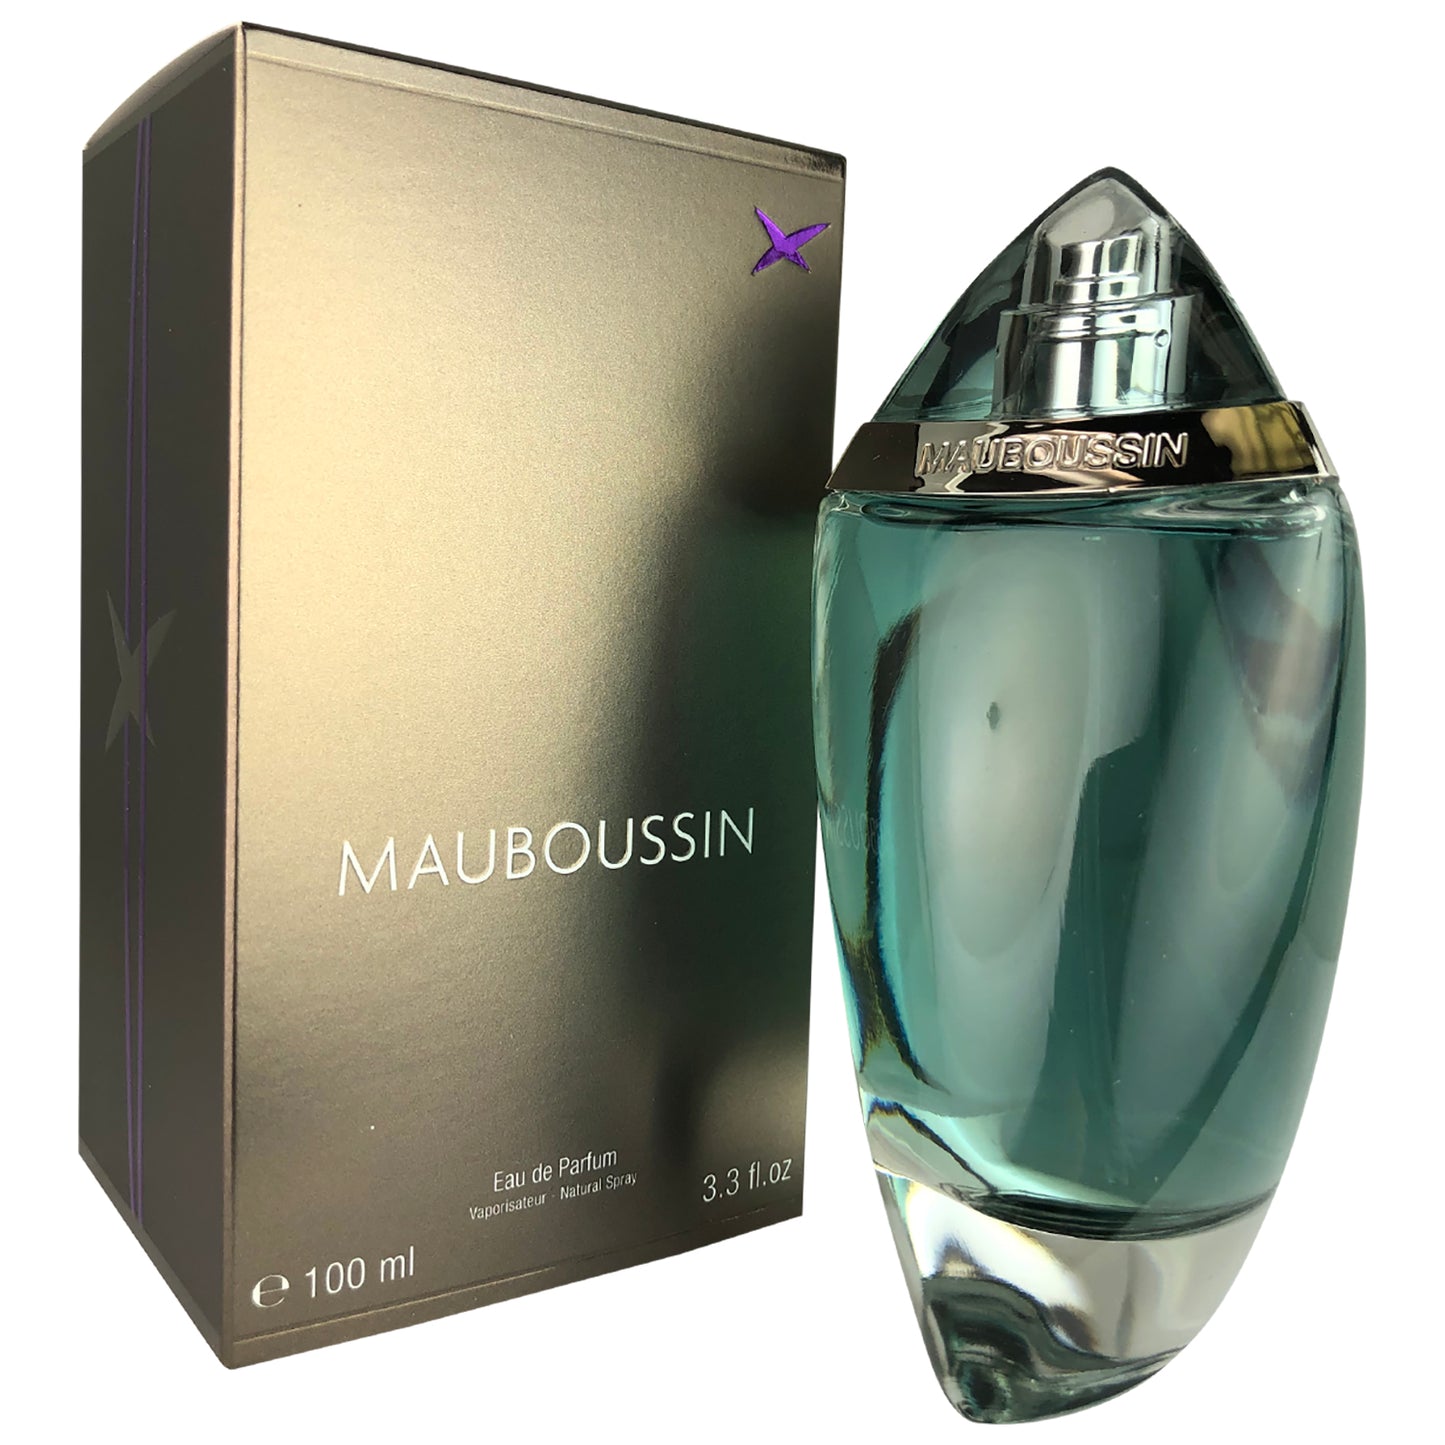 Mauboussin for Men by Mauboussin 3.3 oz Eau de Parfum Natural Spray